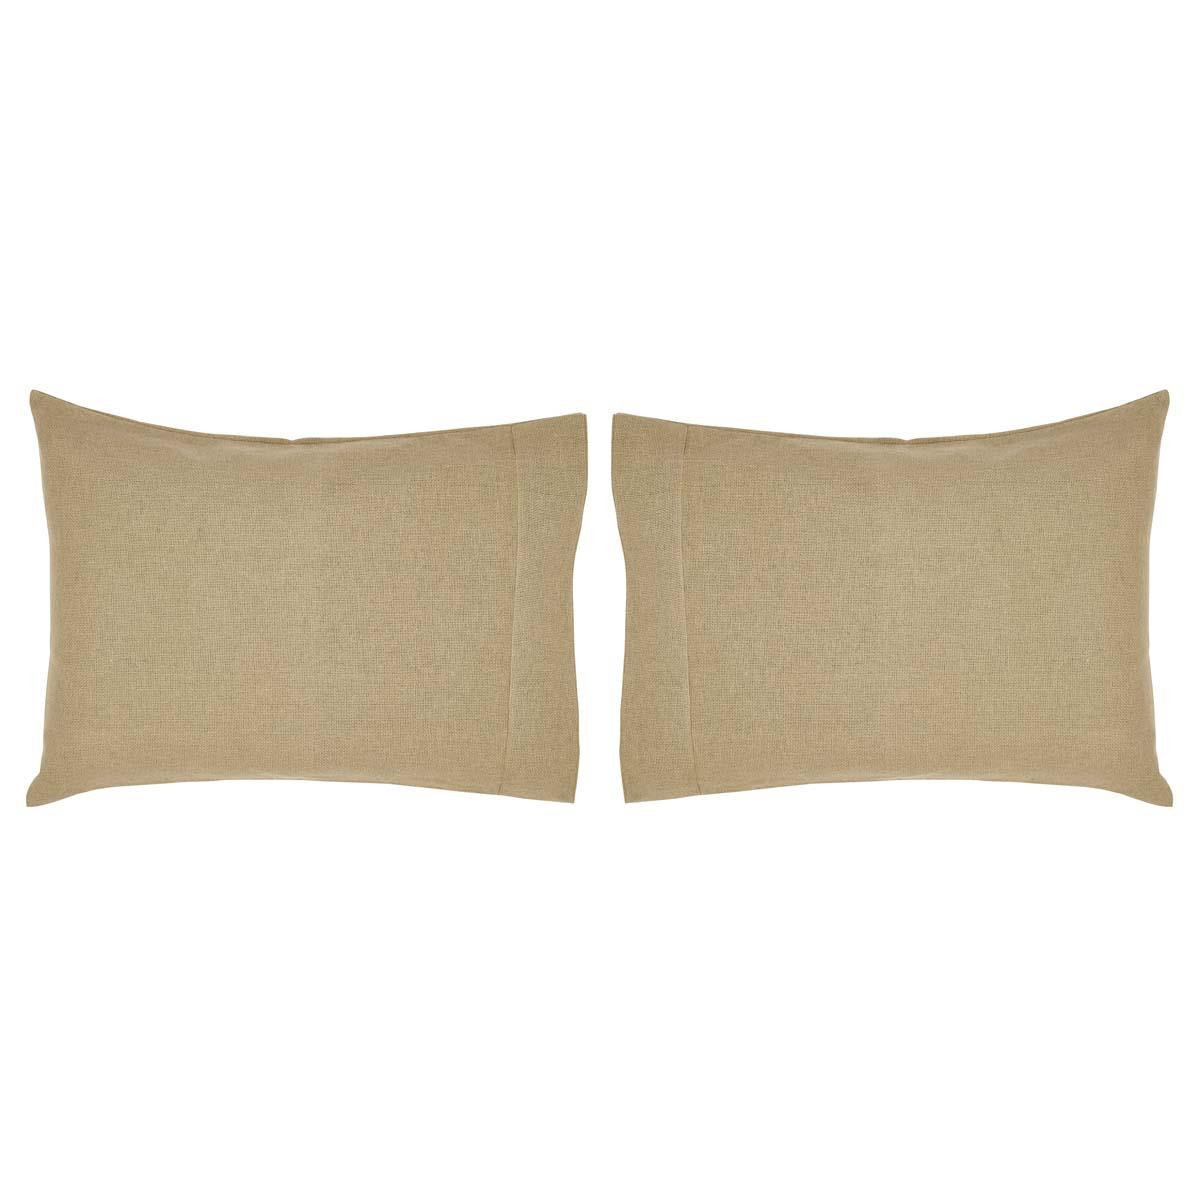 Burlap Natural Pillow Case Set - 840528103094